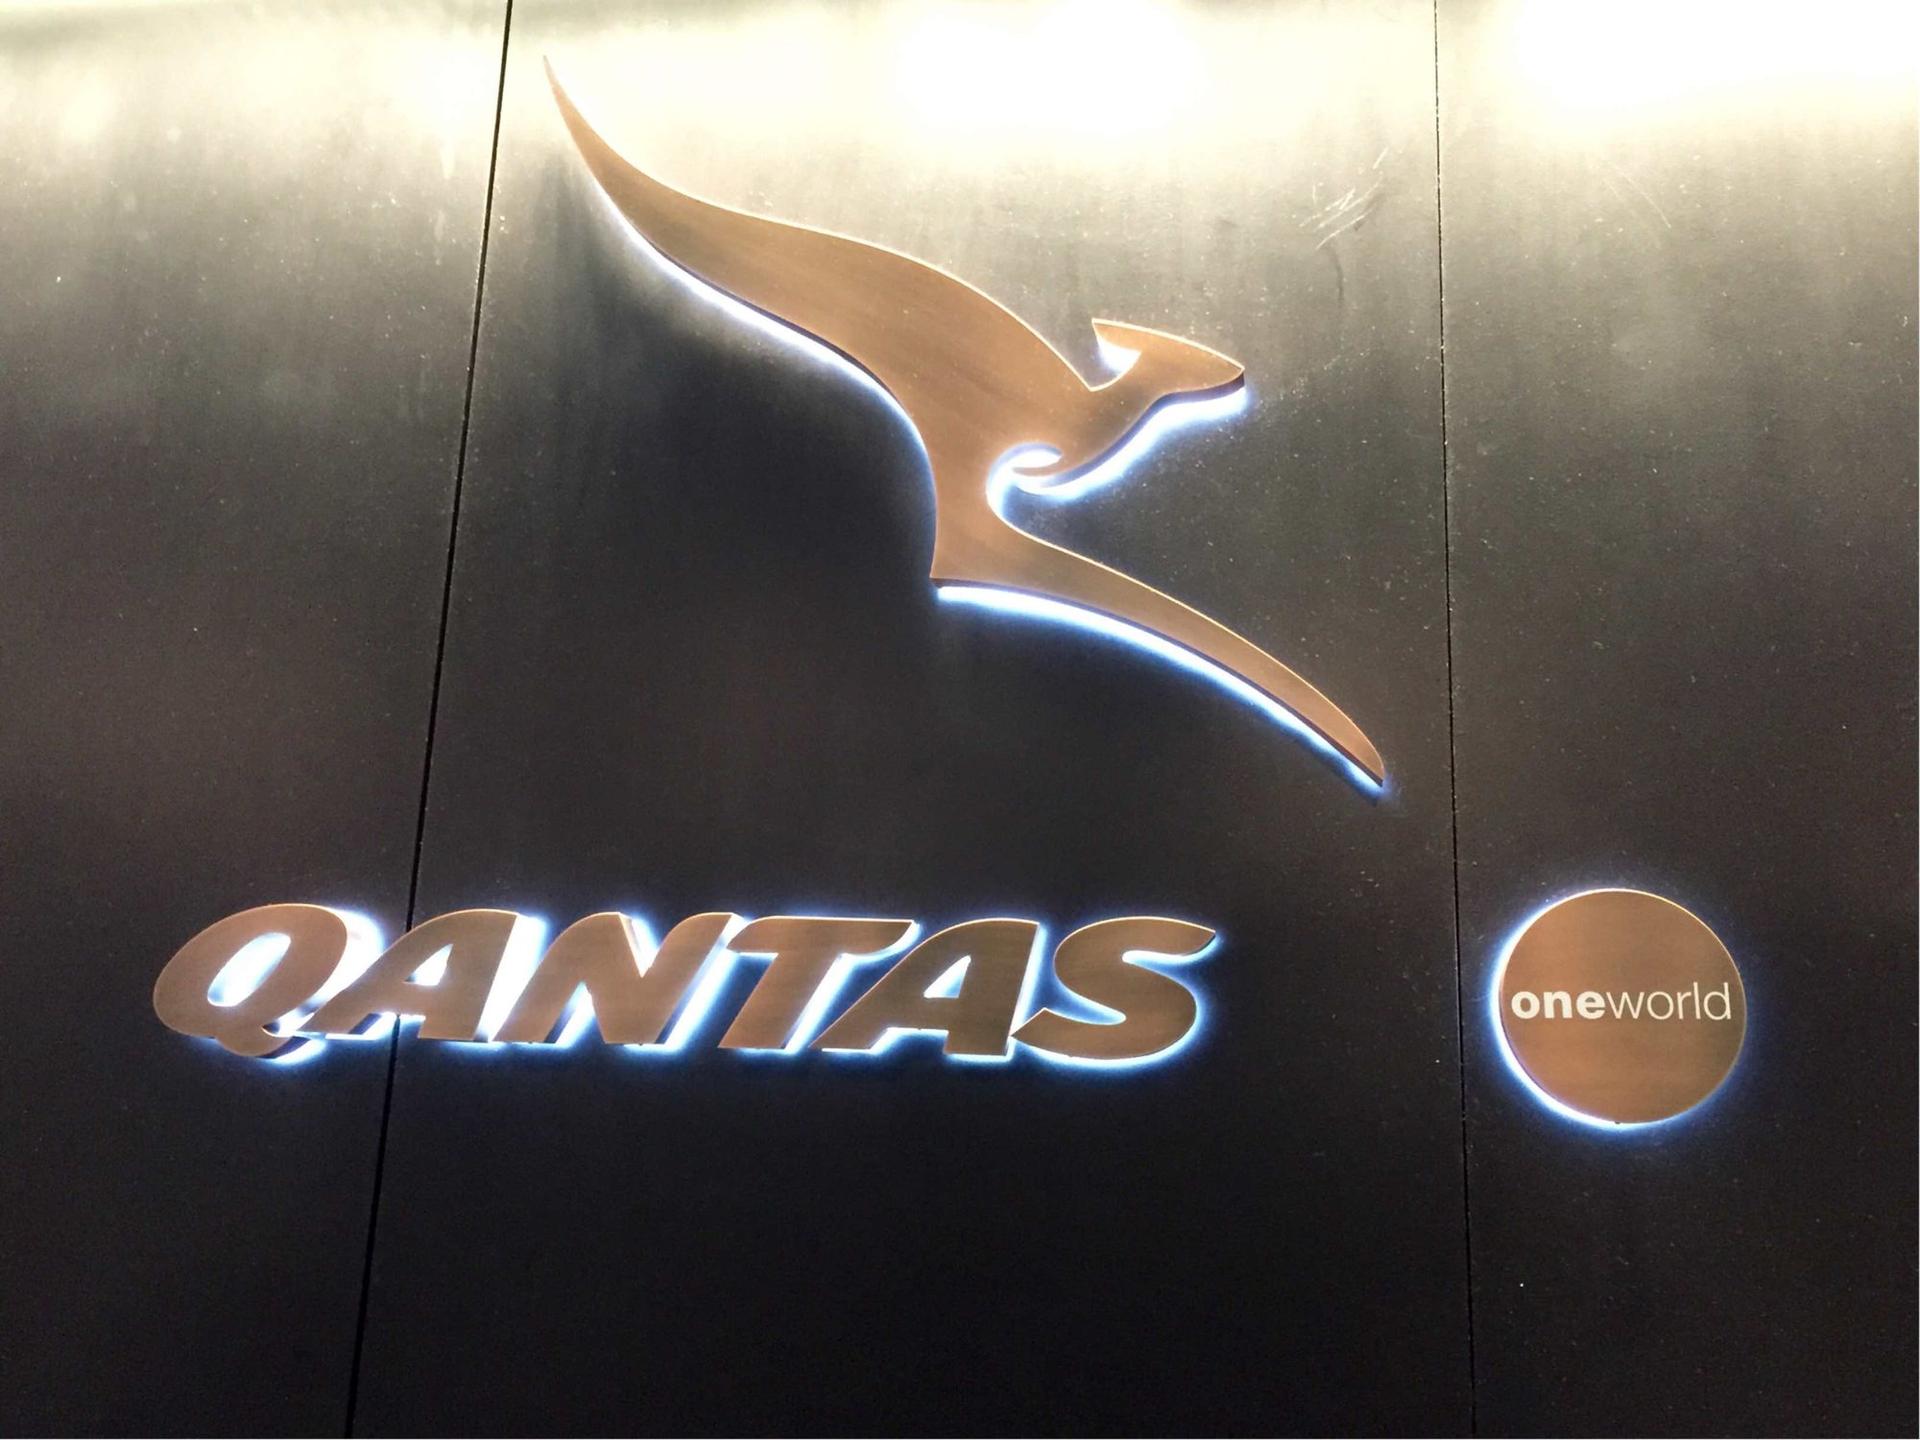 The Qantas Hong Kong Lounge image 57 of 99